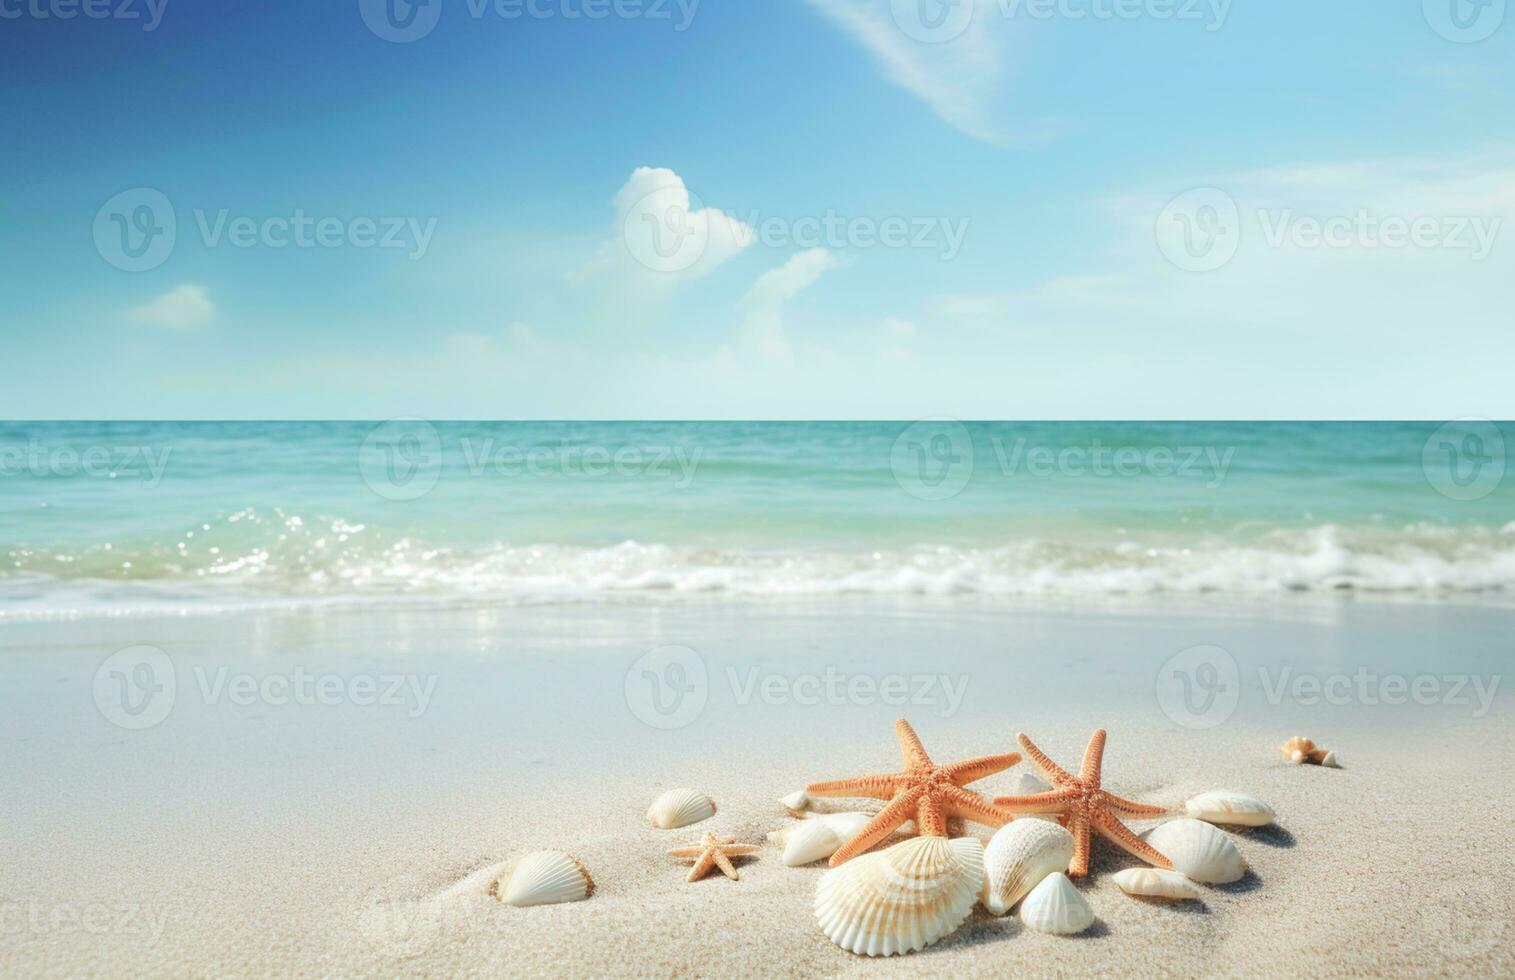 conchas do mar e estrelas do mar em a lindo tropical de praia e mar com azul céu fundo. verão período de férias conceito foto